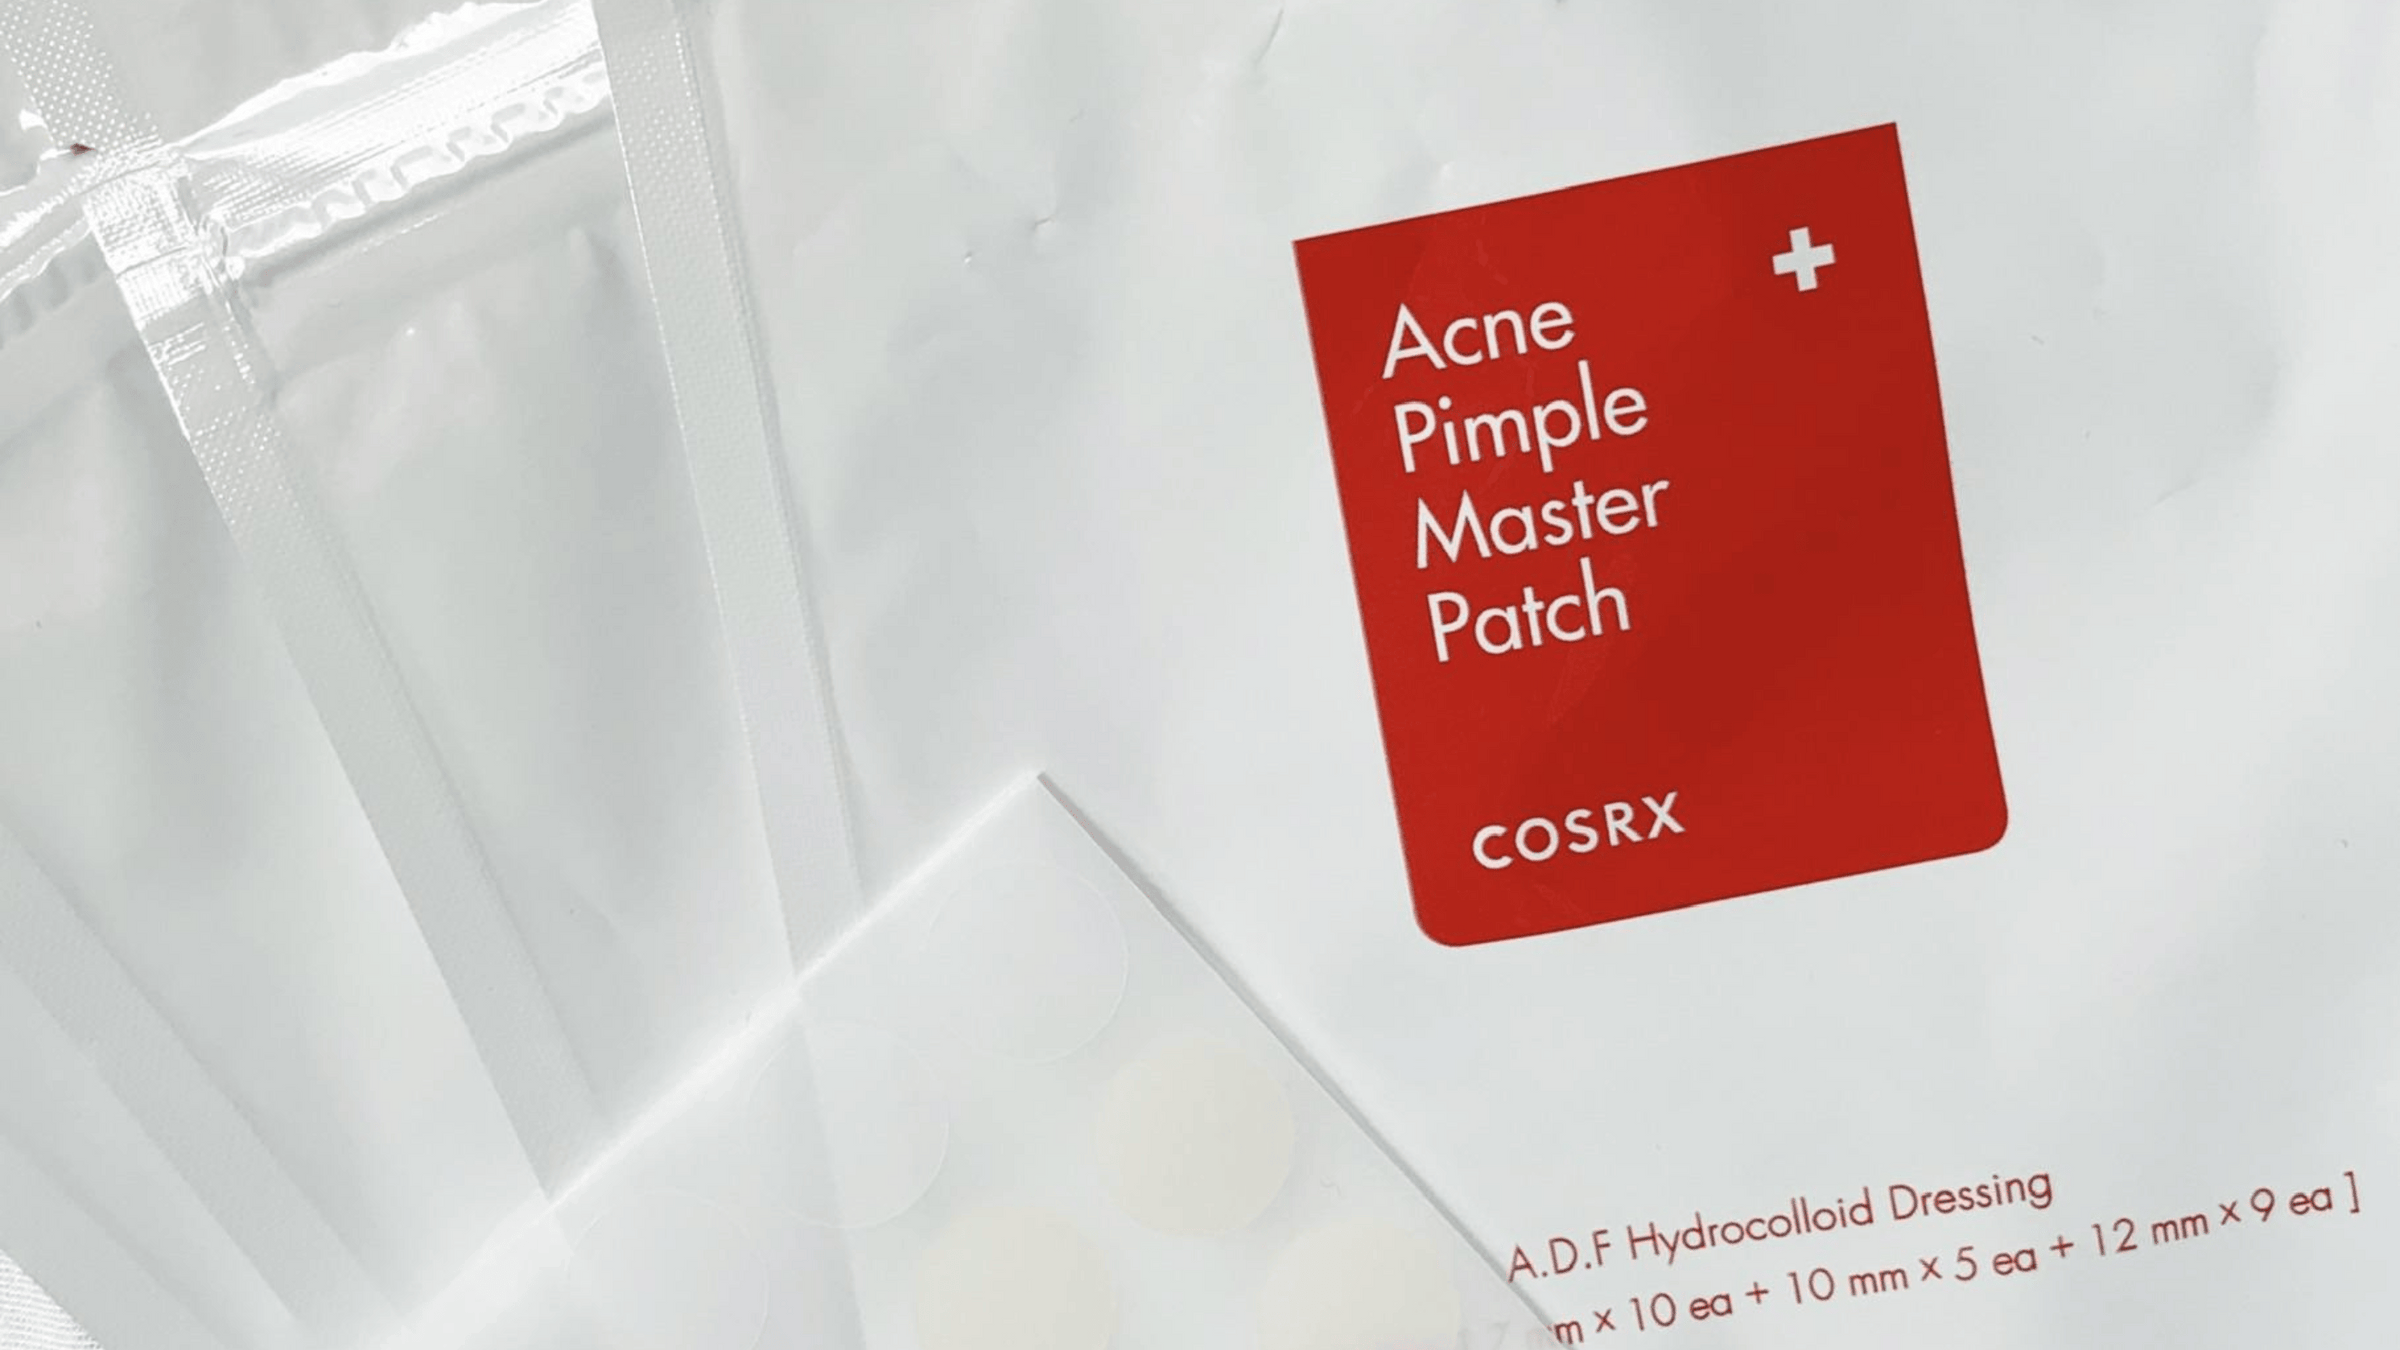 En förpackning av COSRX Acne Pimple Master Patch, hydrokolloida klistermärken för punktbehandling av akne.